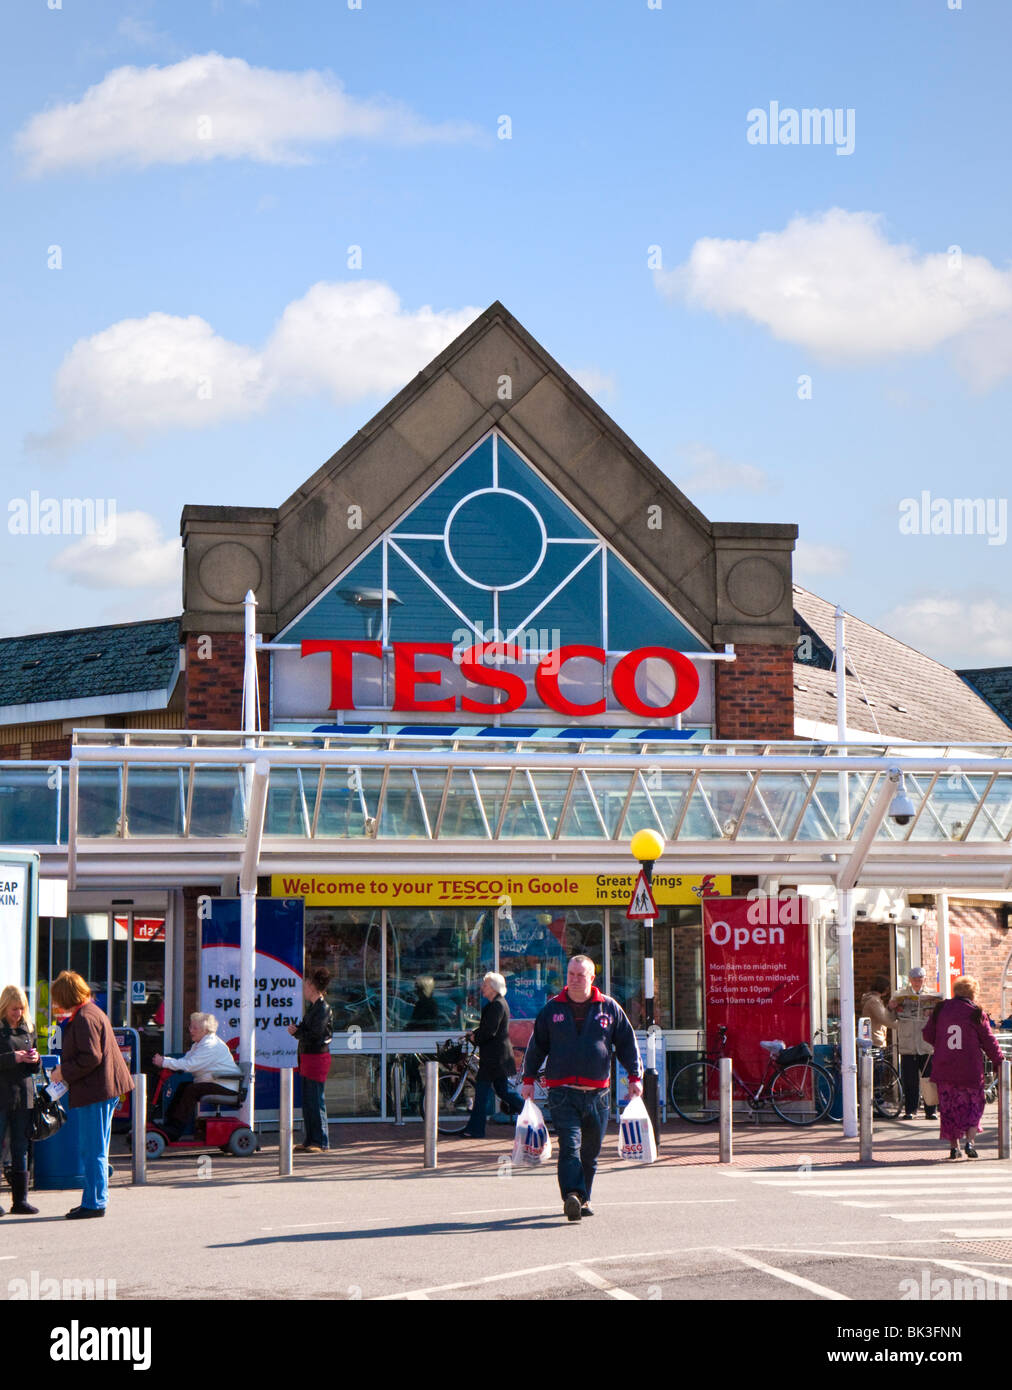 Tesco supermarket store, England, UK Stock Photo